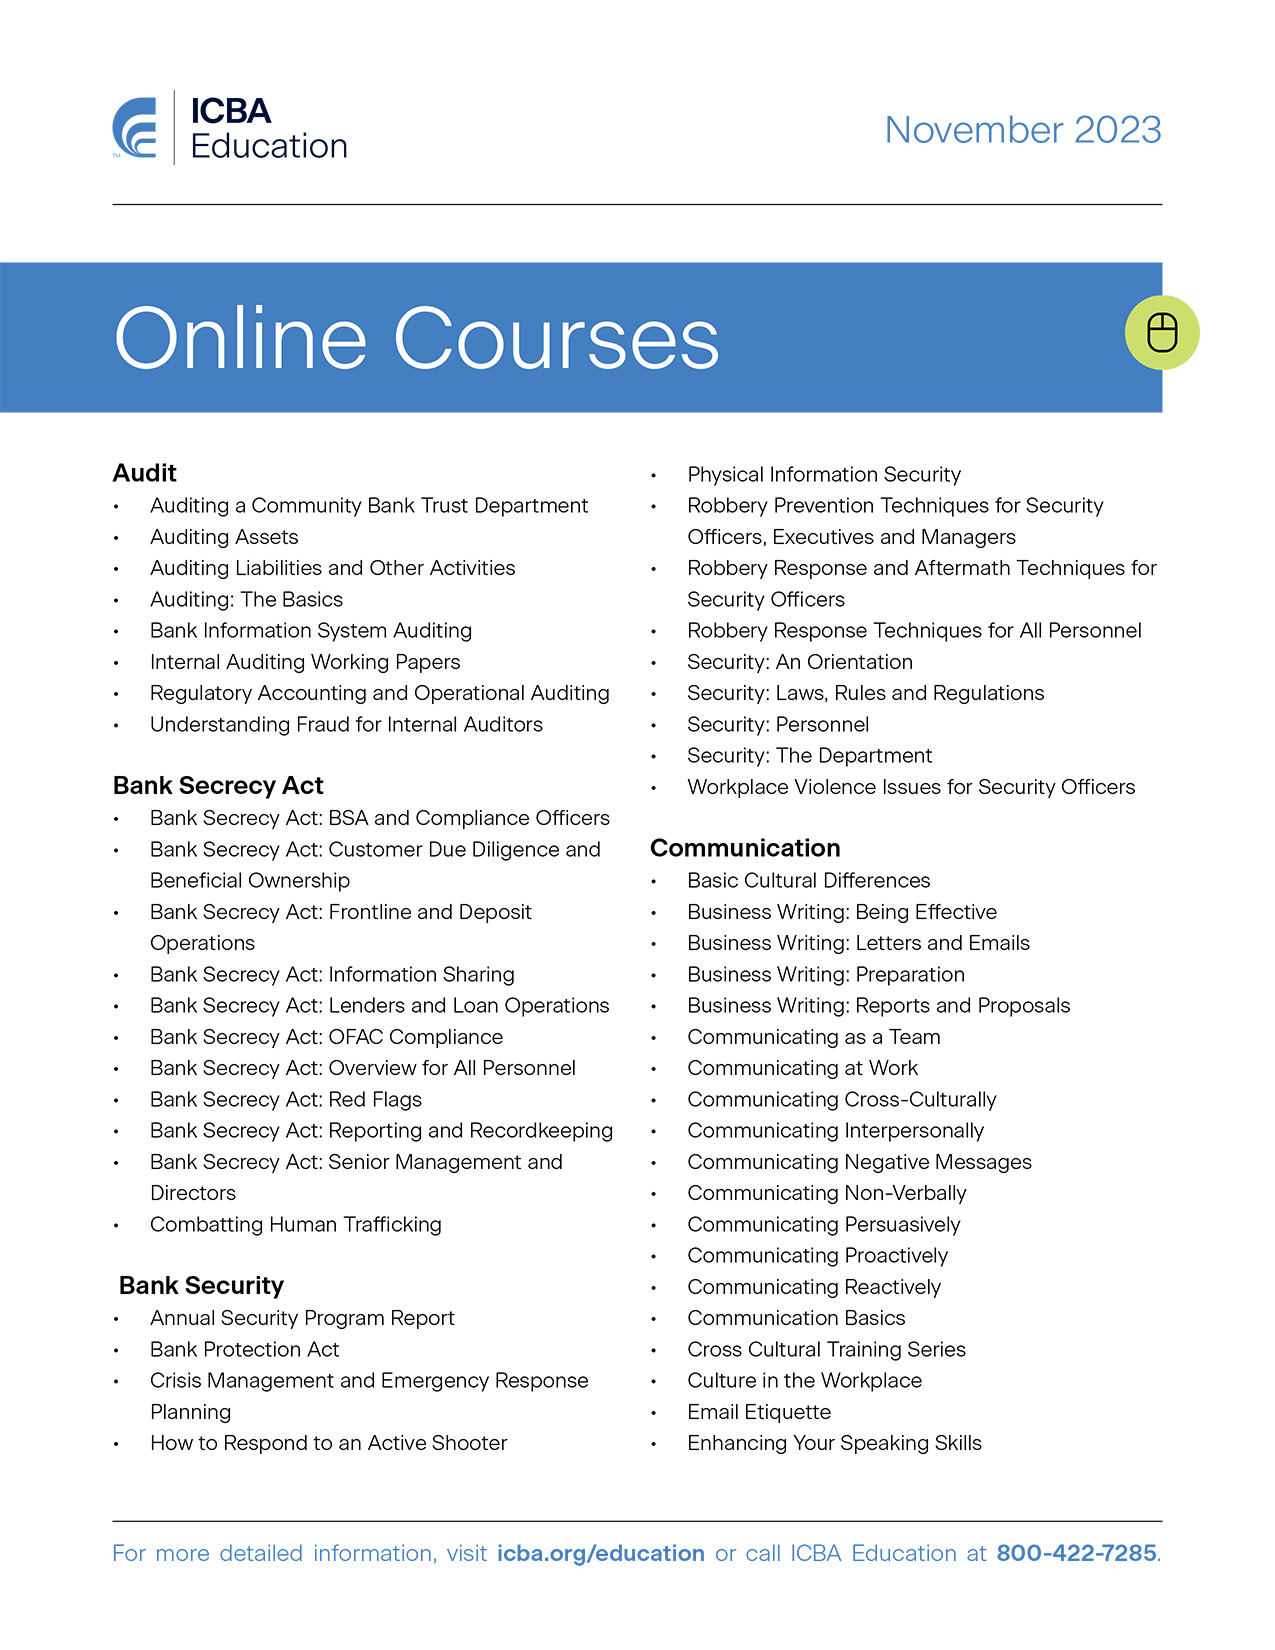 Online Course List